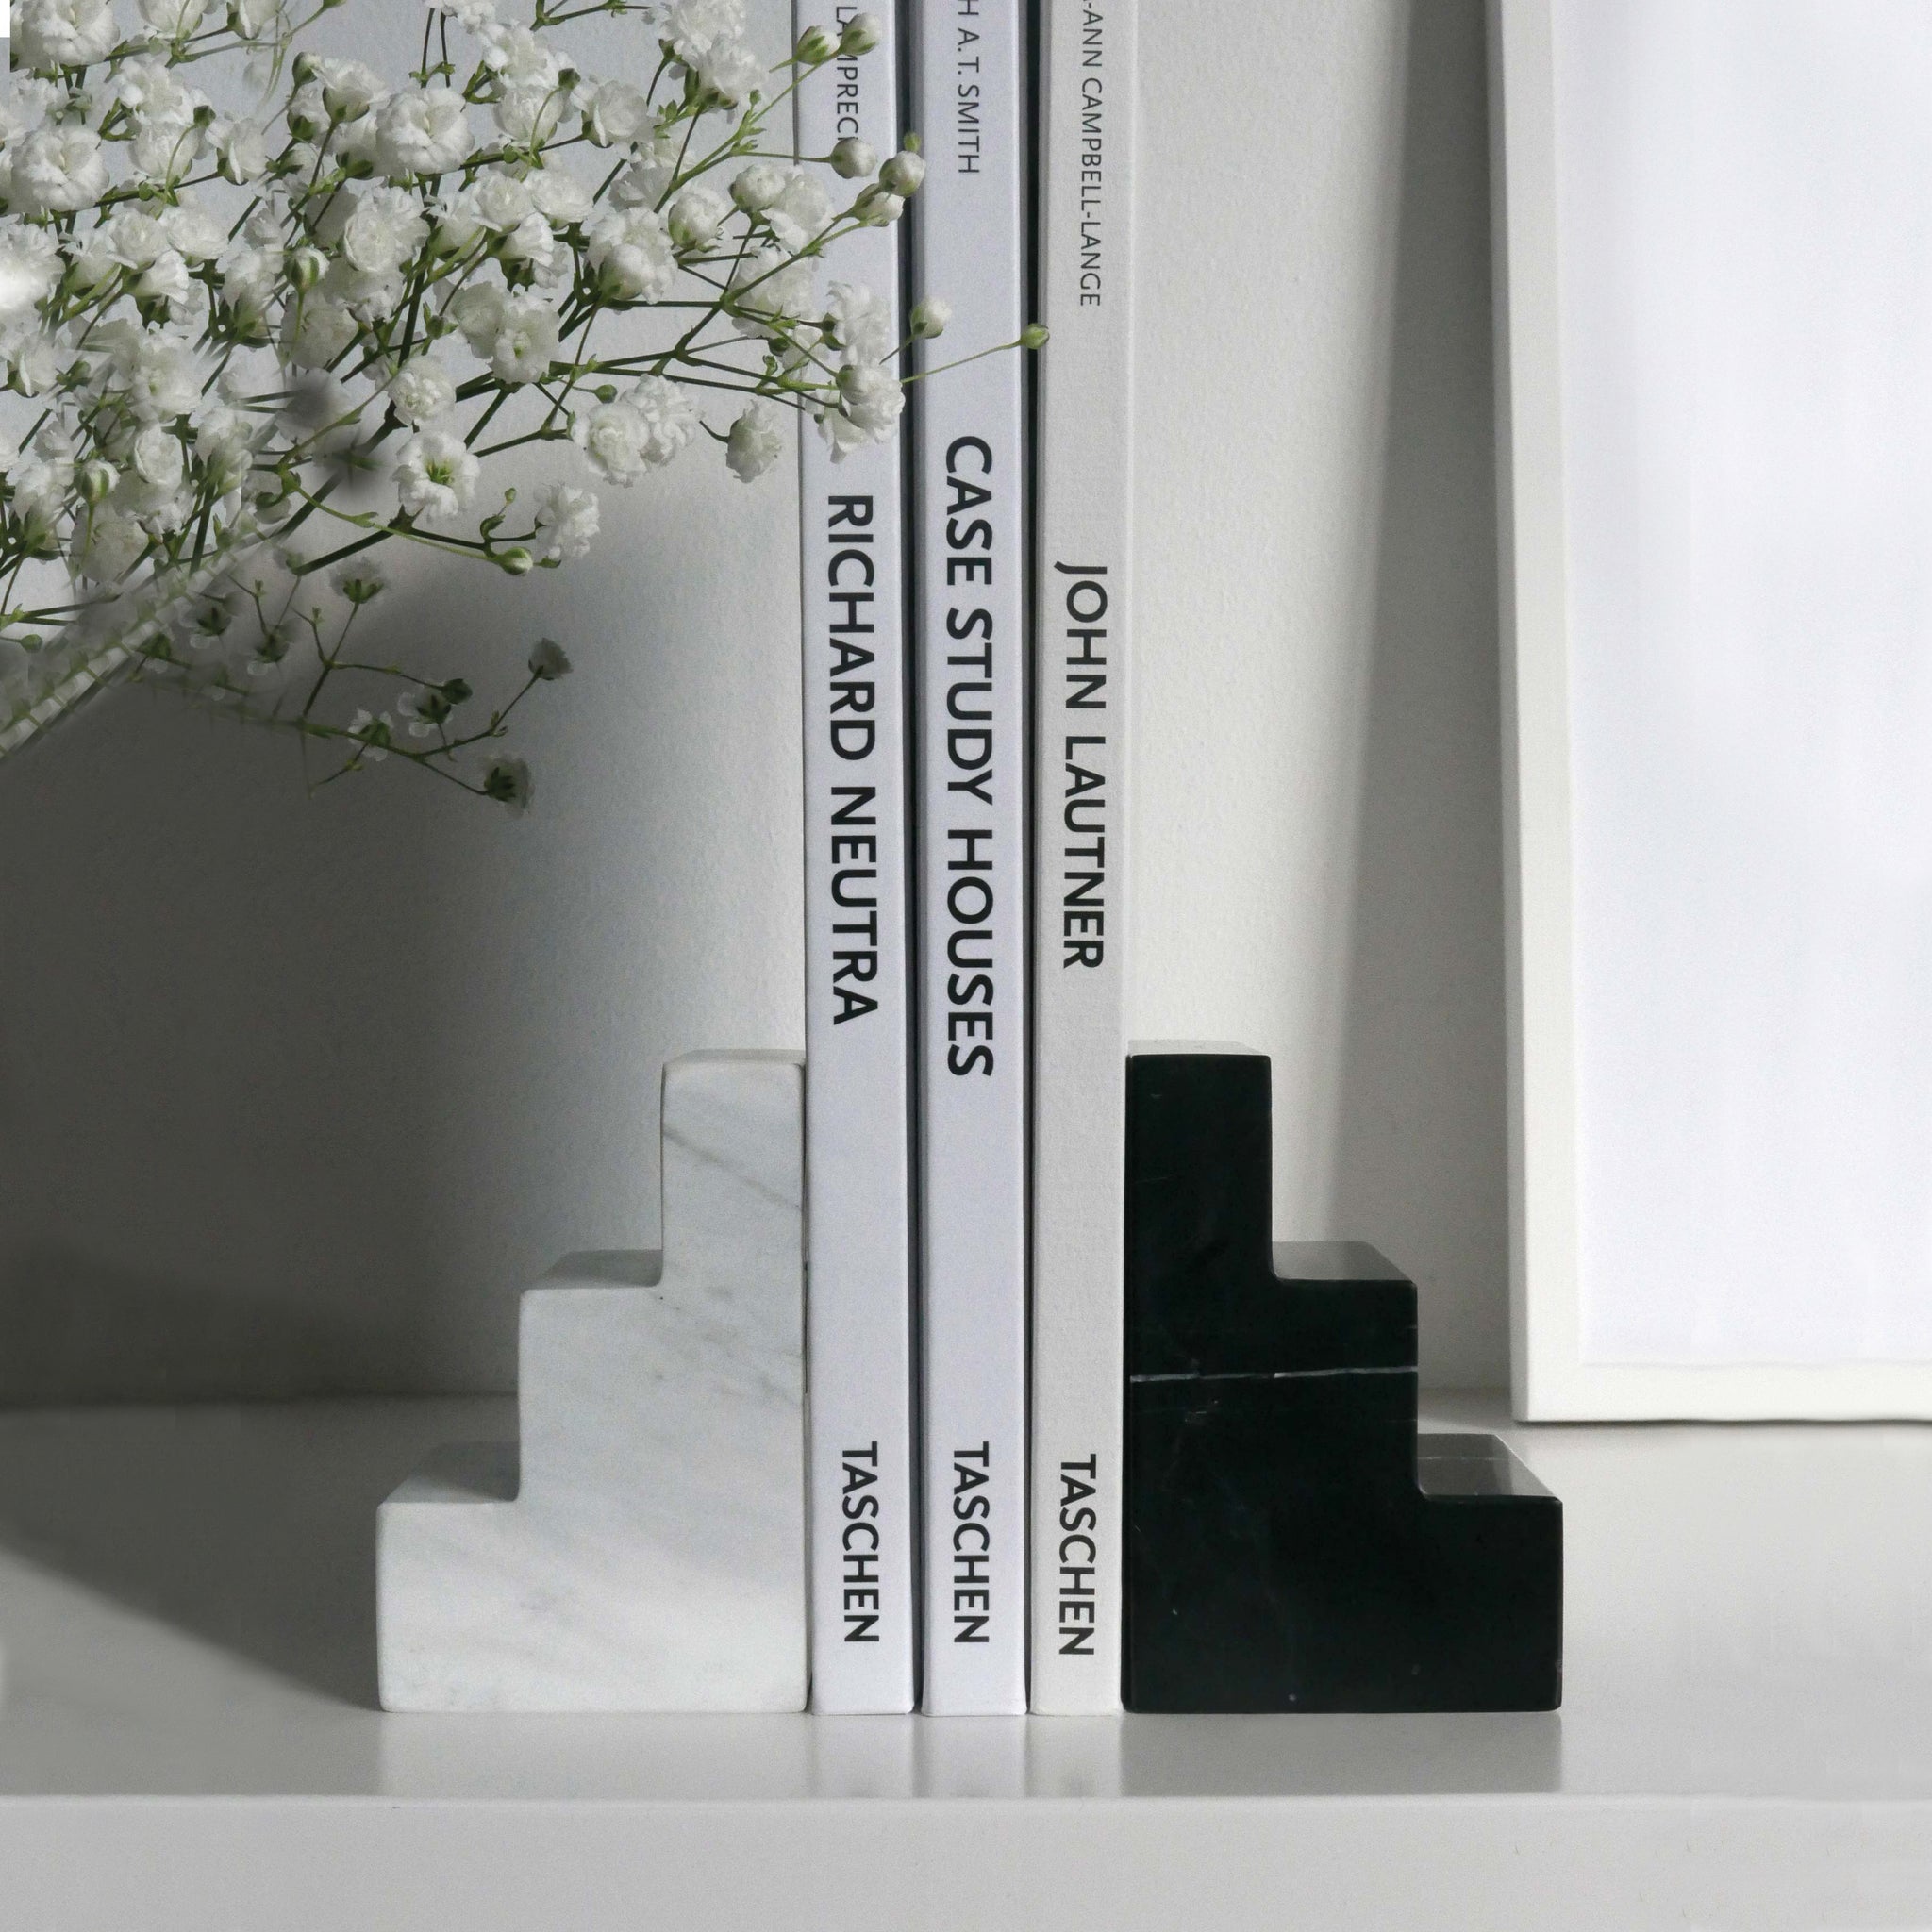 Boekensteunen Staircube set van 2│marmer zwart en wit│Printworks│PW00548│op plank met boeken